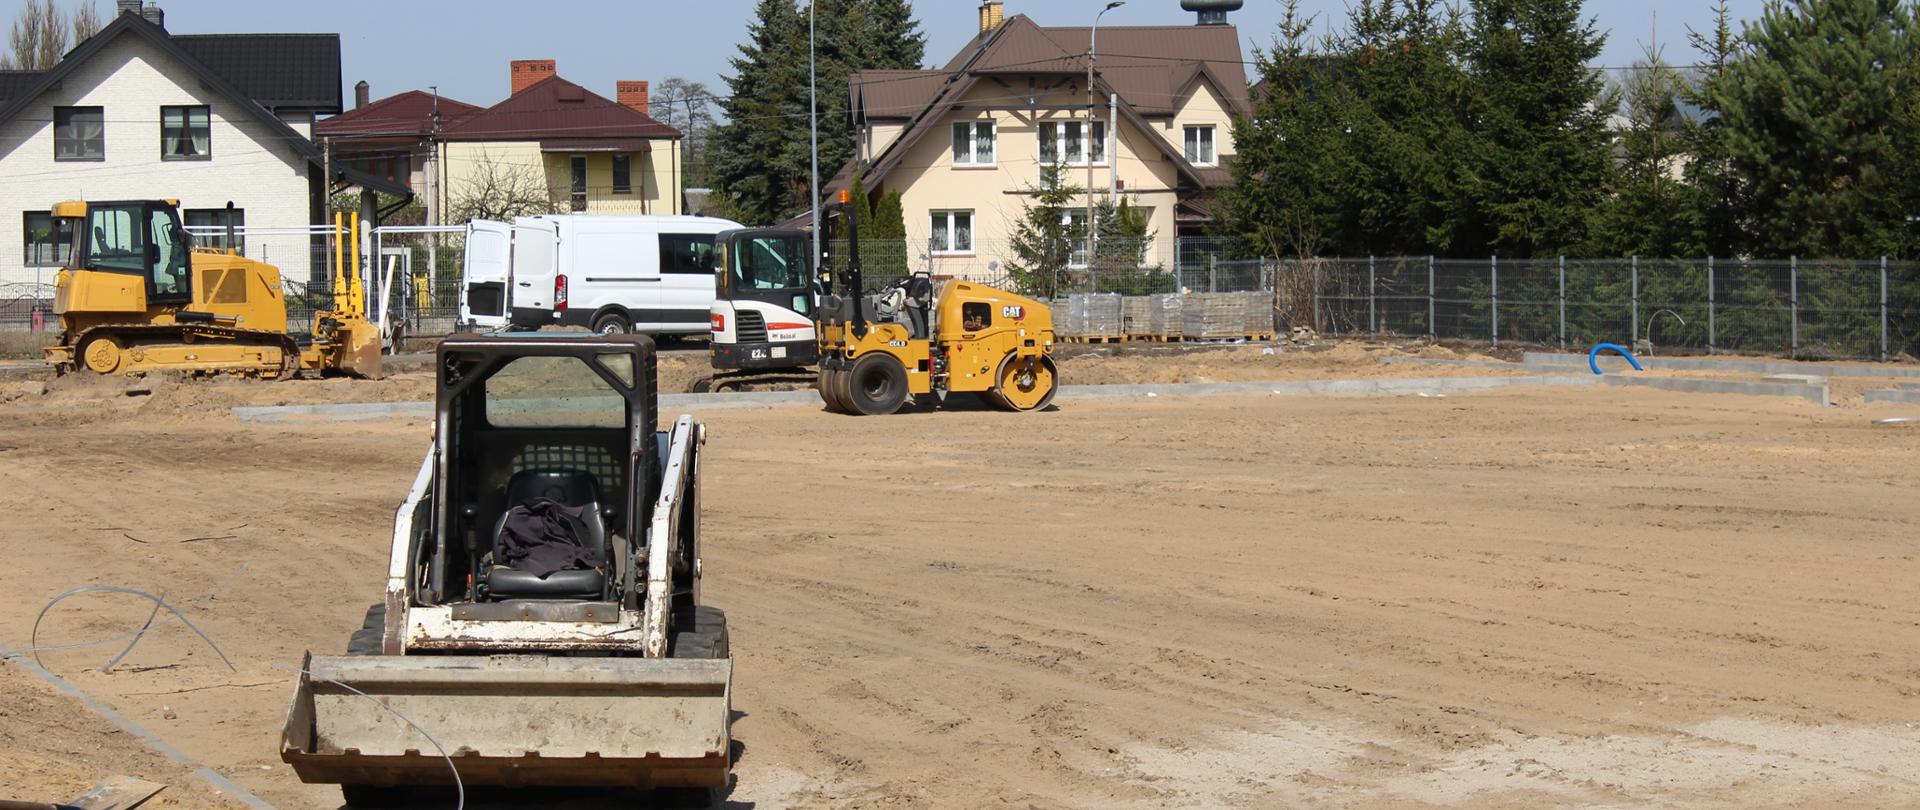 Plac budowy - maszyny budowlane stoją na piaszczystej powierzchni - przyszłym boisku